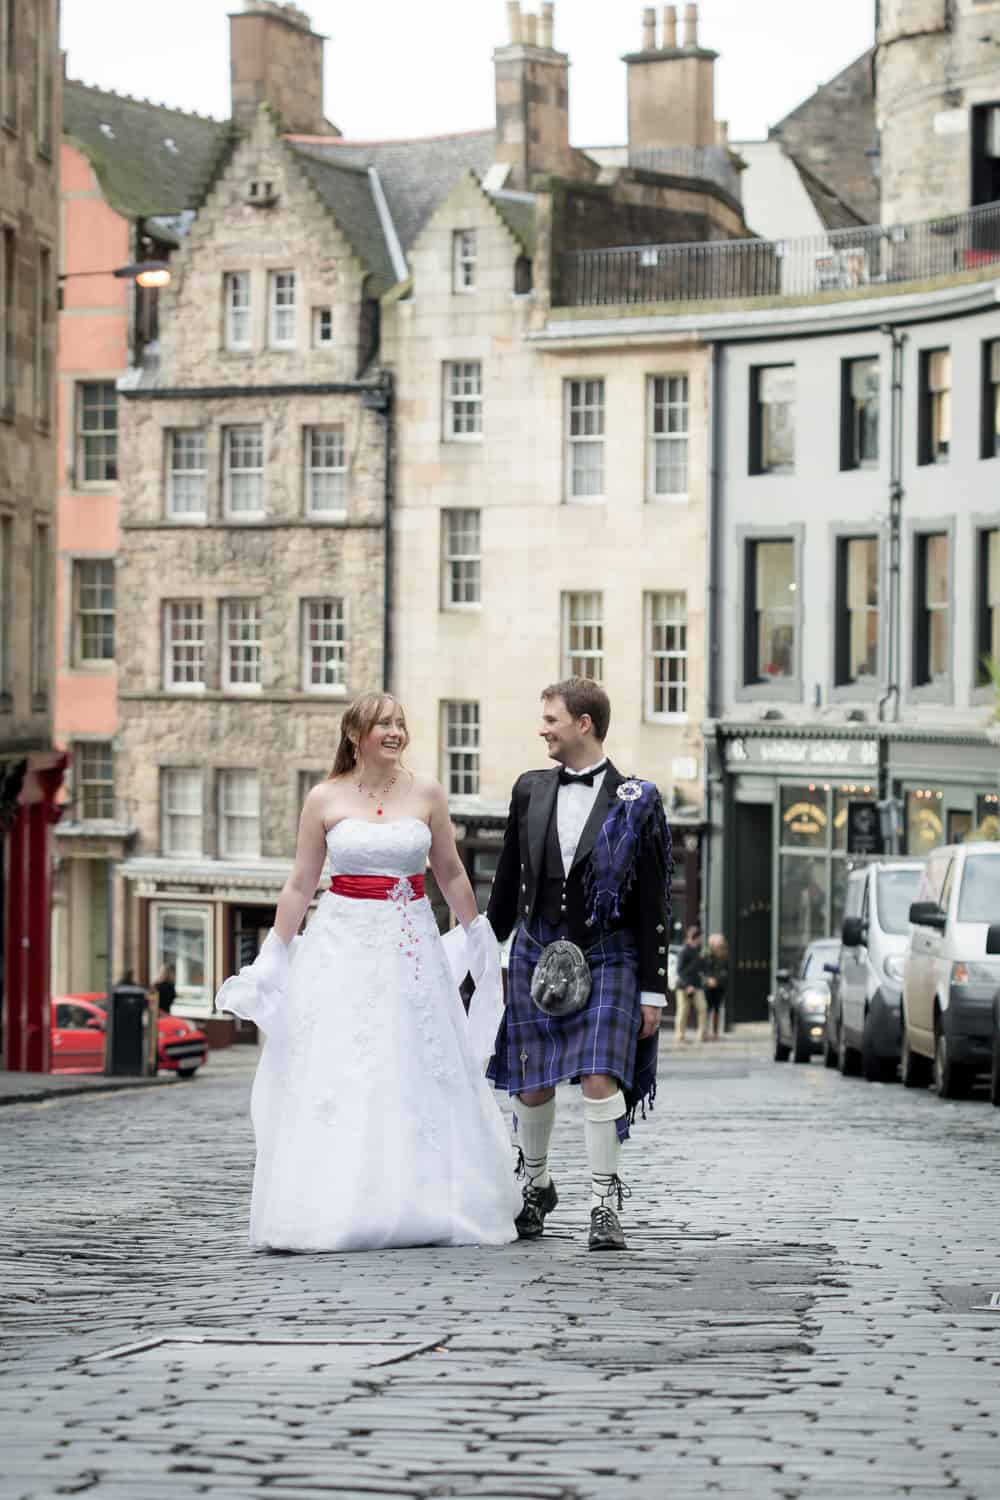 Top romantic places to propose in Edinburgh. 45